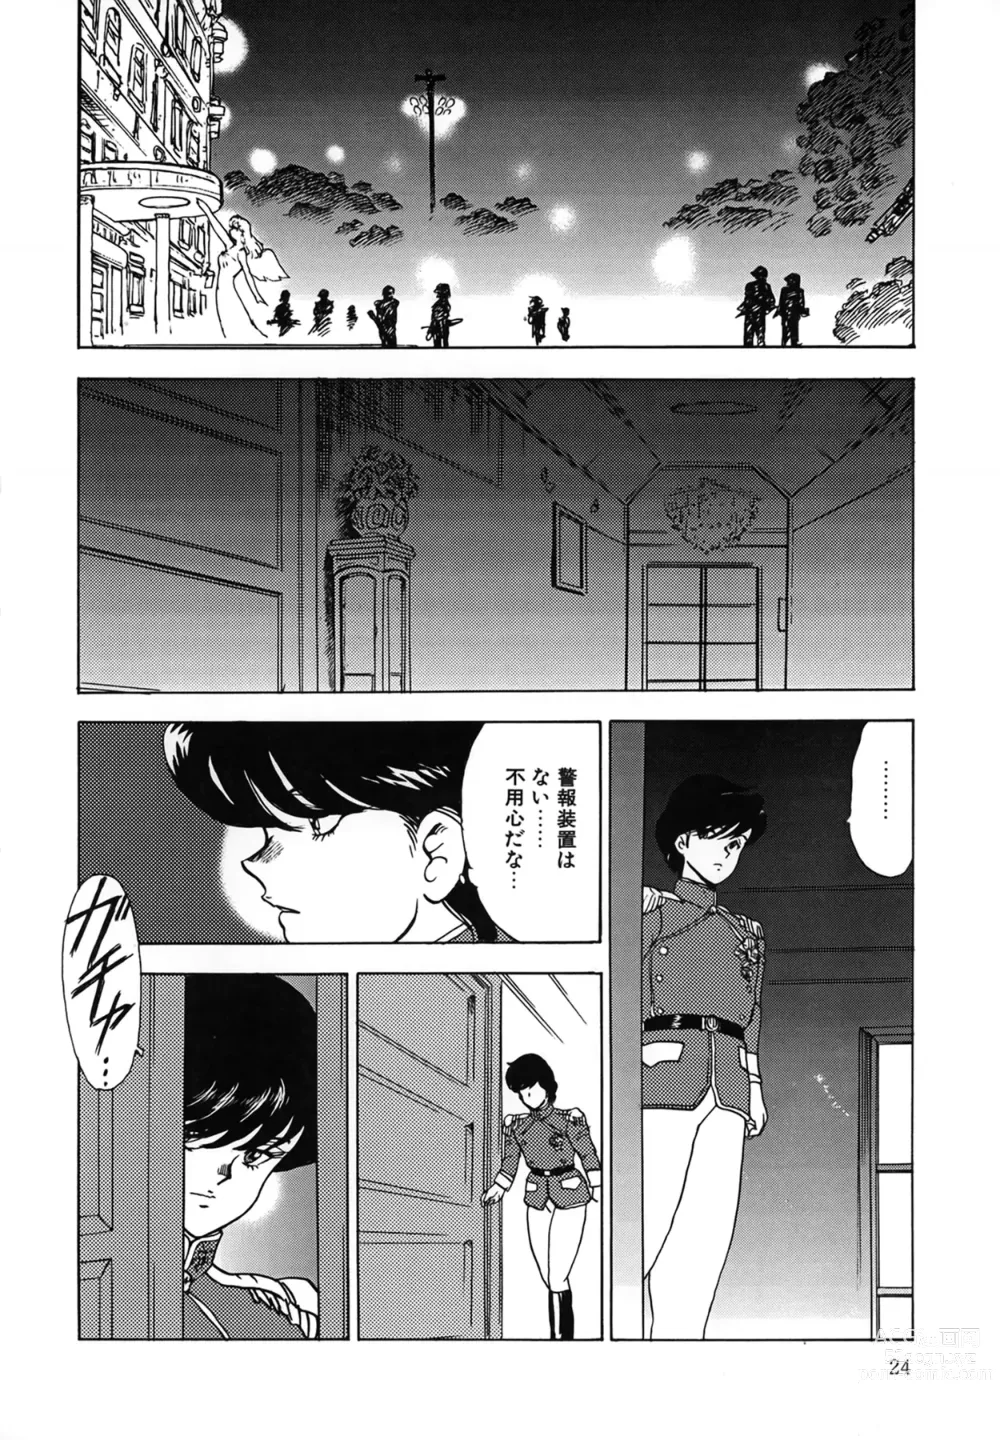 Page 24 of manga Inbi Teikoku